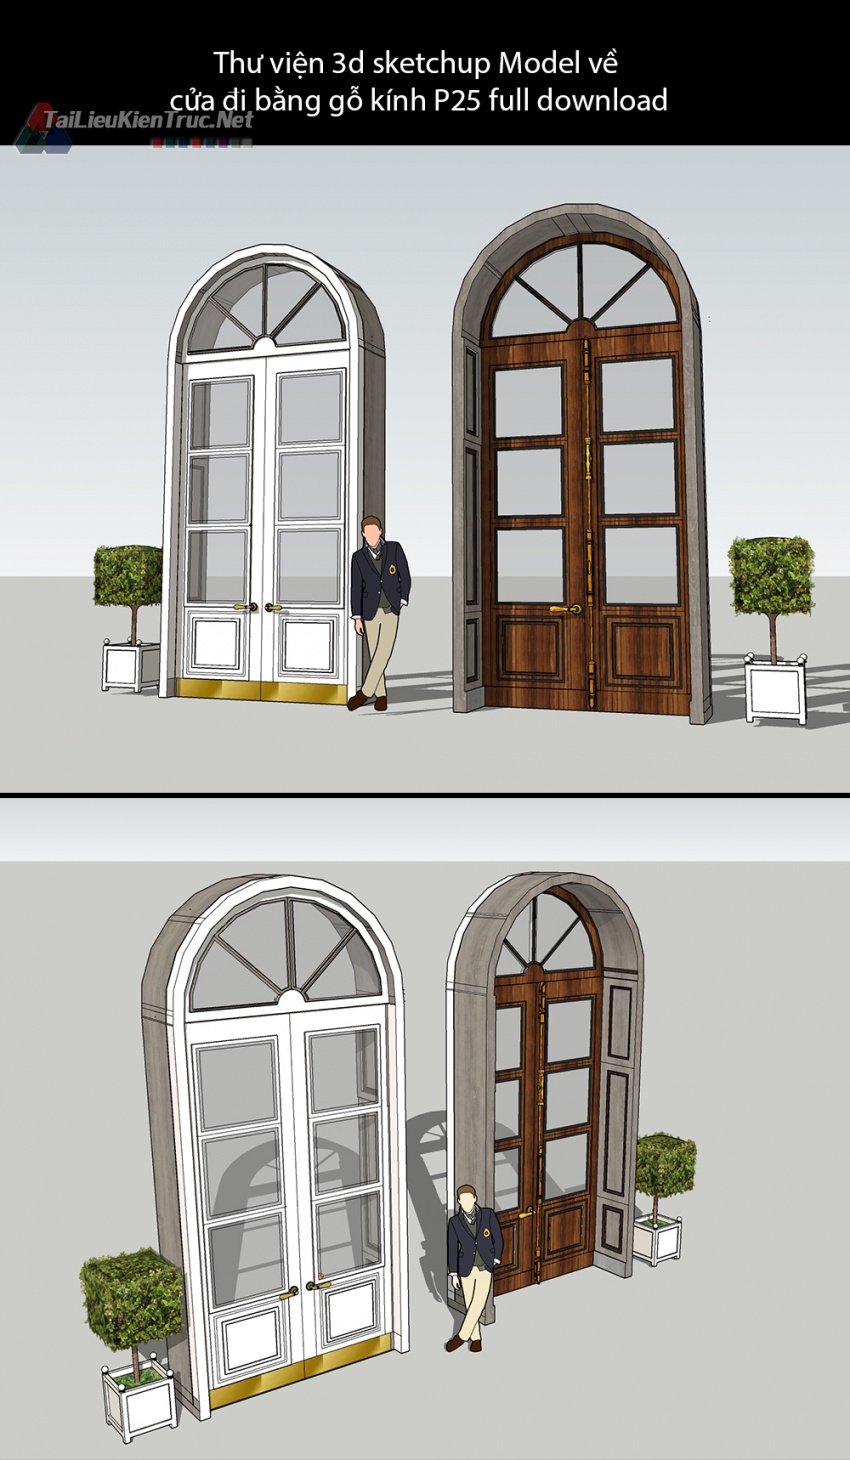 Thư viện 3d sketchup Model về cửa đi bằng gỗ kính P25 full download